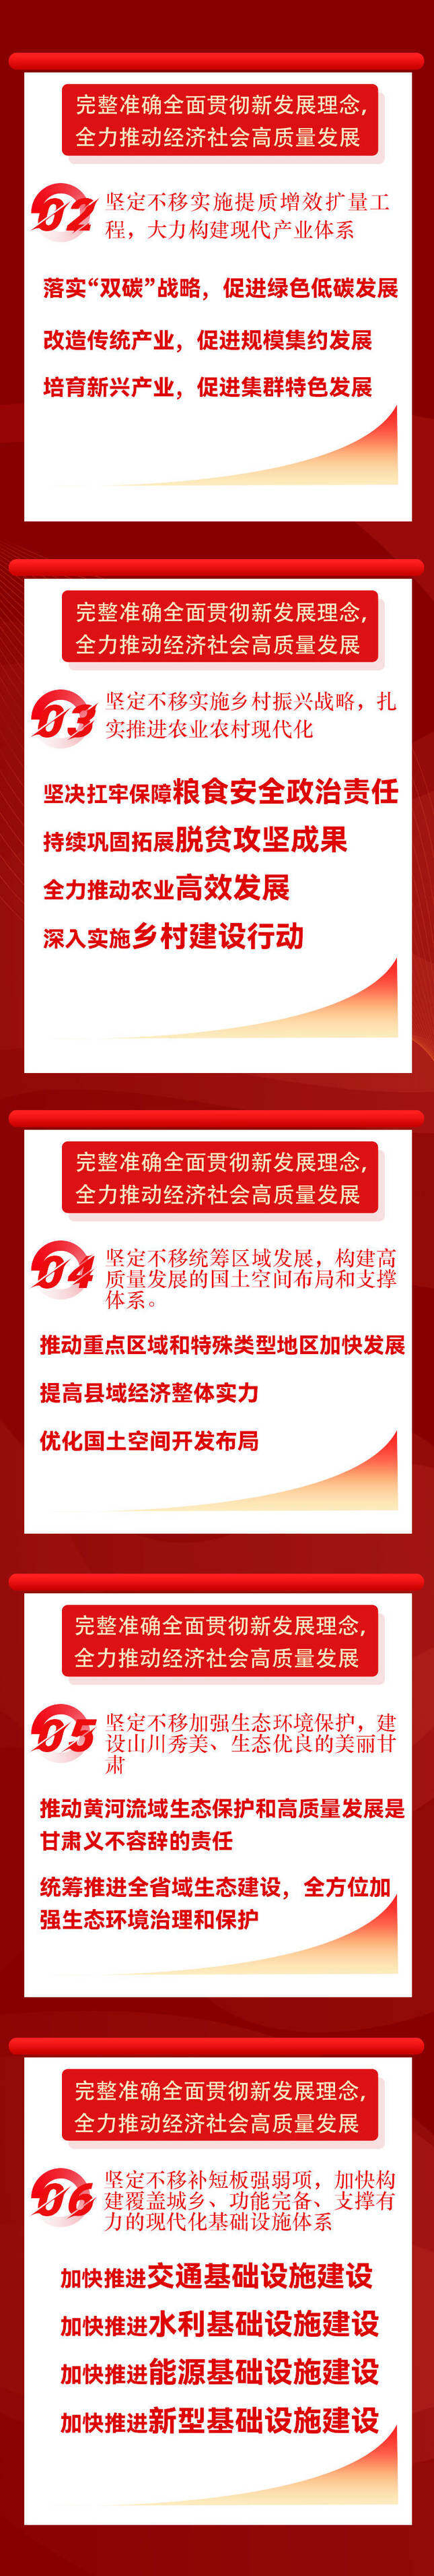 一图读懂 | 中国共产党甘肃省第十四次代表大会报告